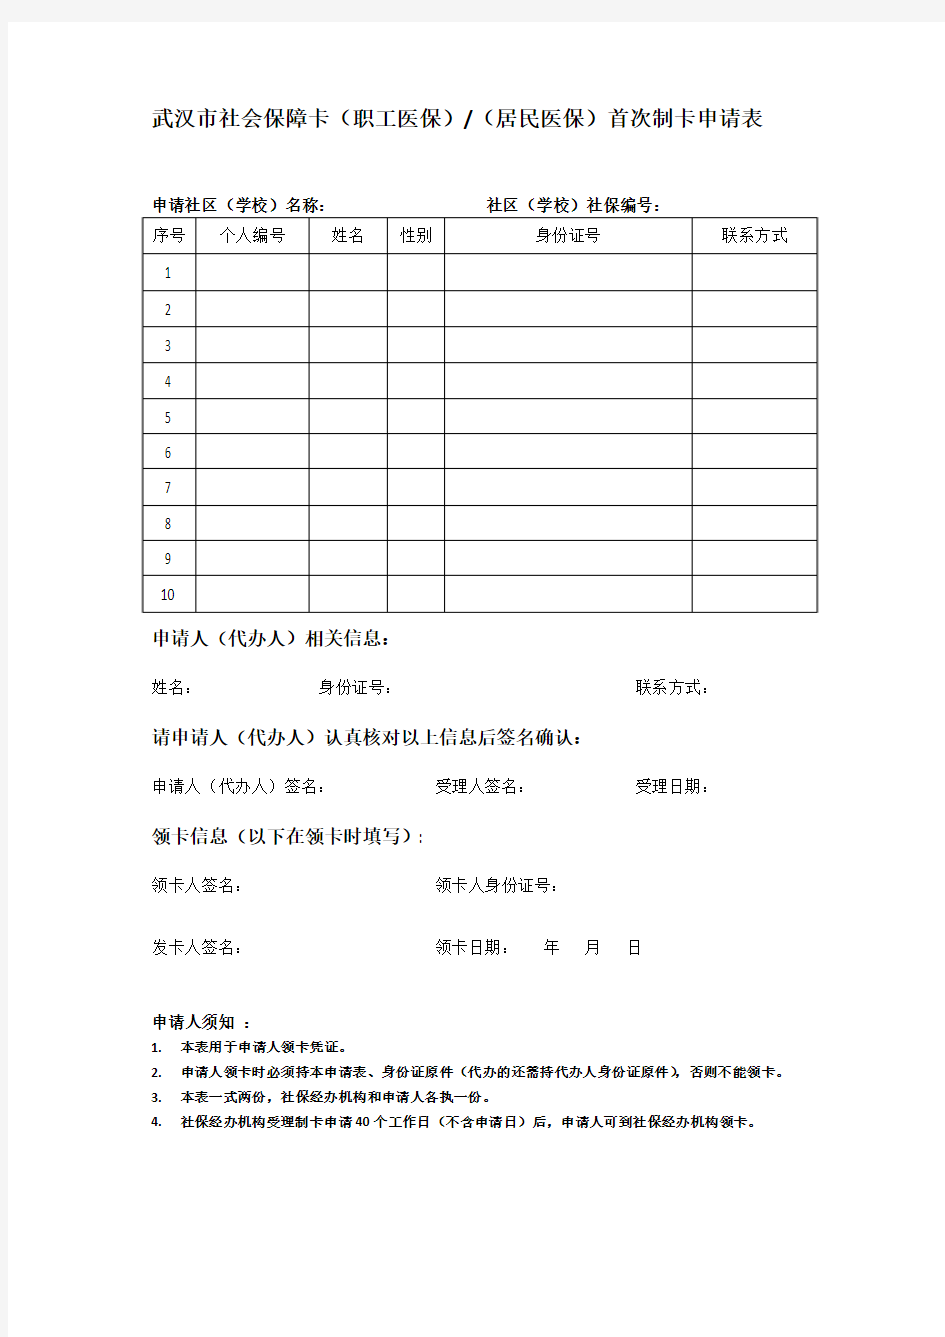 武汉市社会保障卡首次制卡申请表